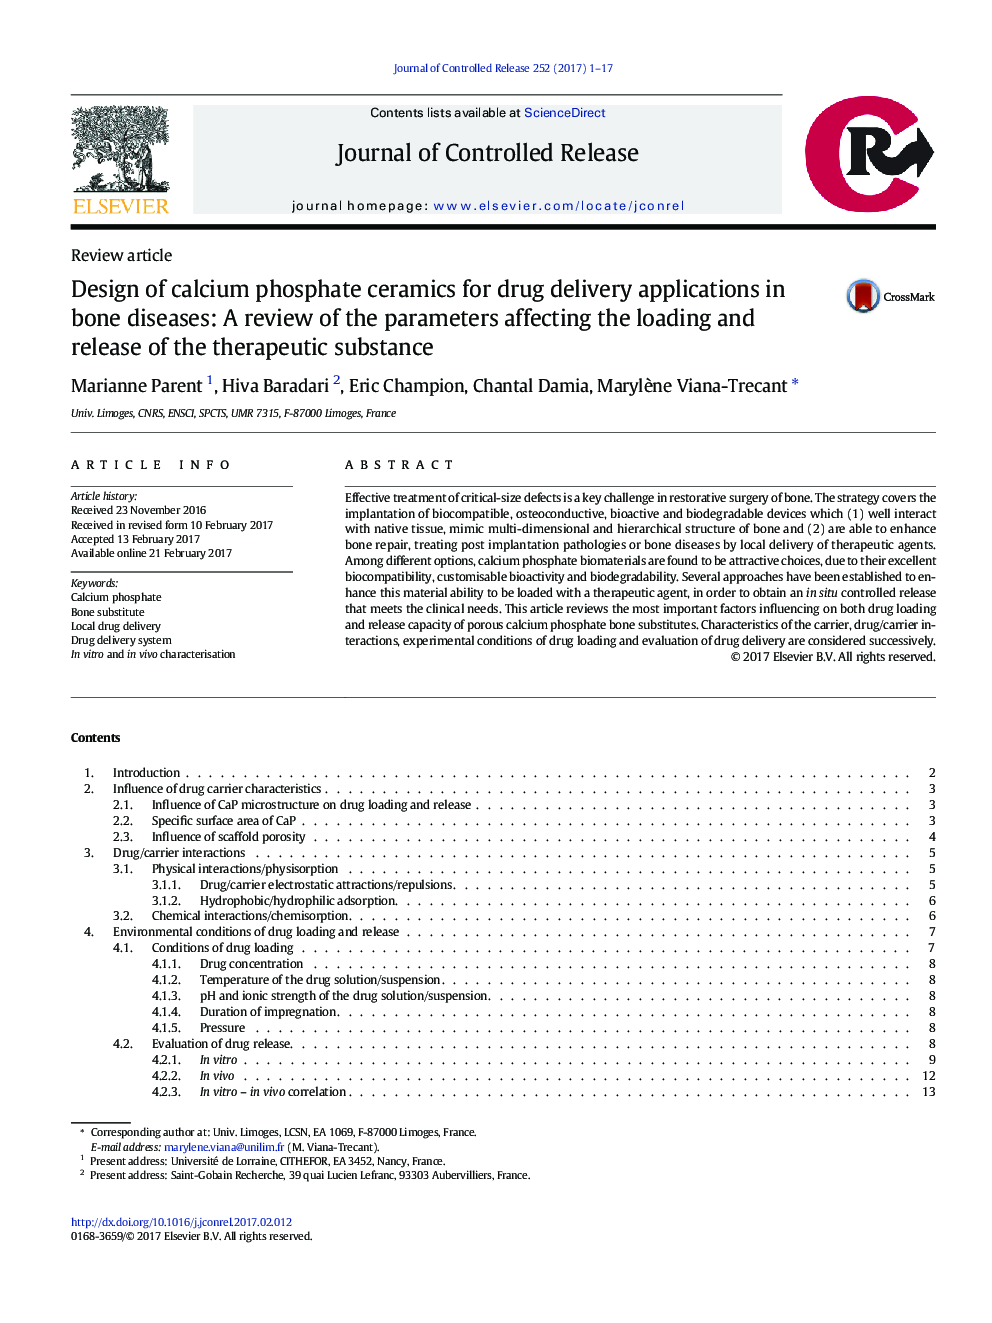 طراحی سرامیک فسفات کلسیم برای اعمال دارو در بیماری های استخوانی: بررسی پارامترهای موثر بر بارگذاری و انتشار مواد درمانی 